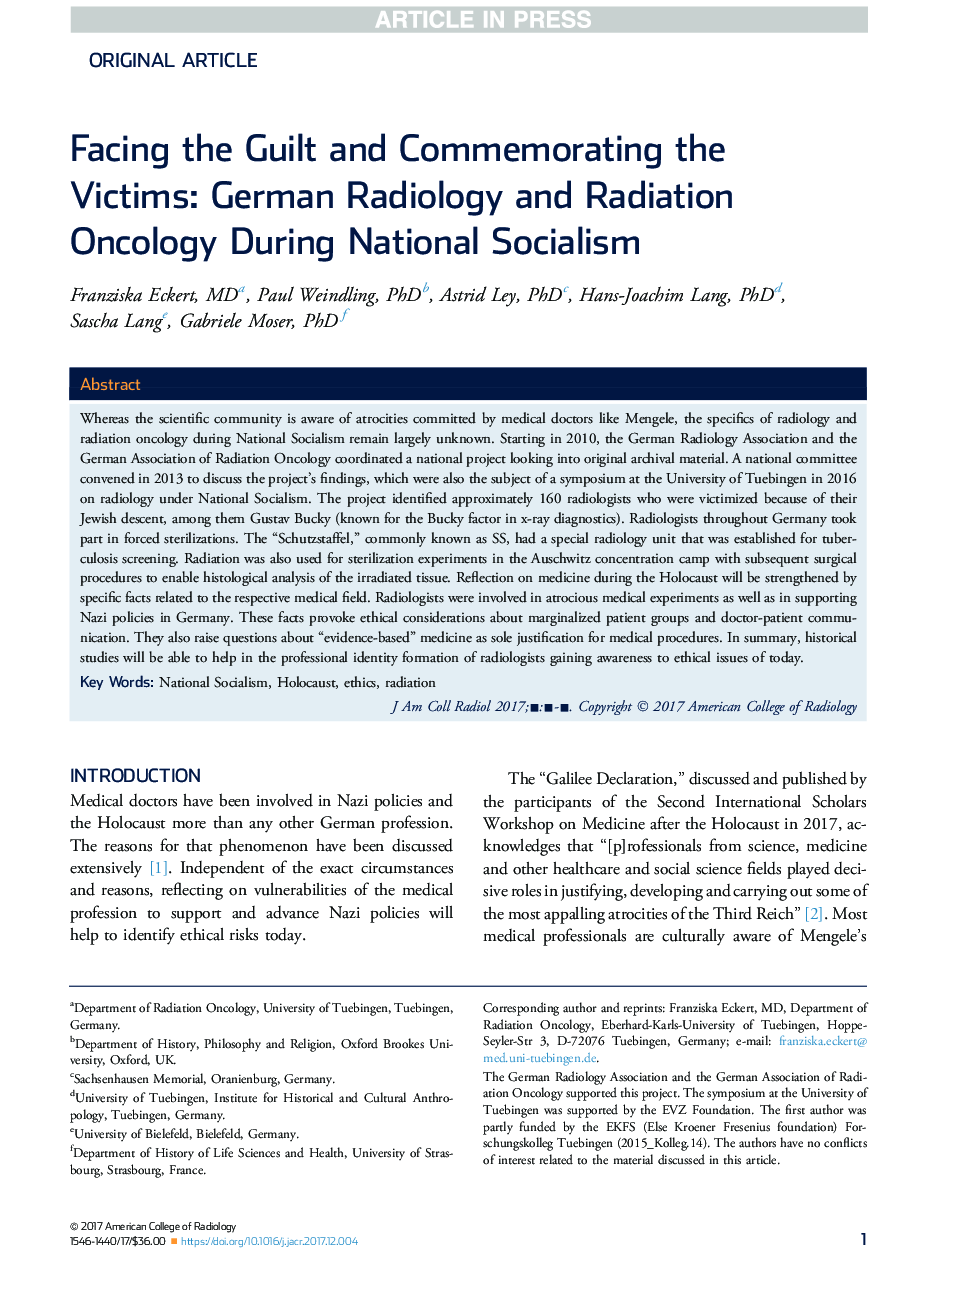 در مواجهه با گناهان و تجلیل از قربانیان: رادیولوژی و رادیولوژی رادیو آلمان در طول سوسیالیسم ملی 